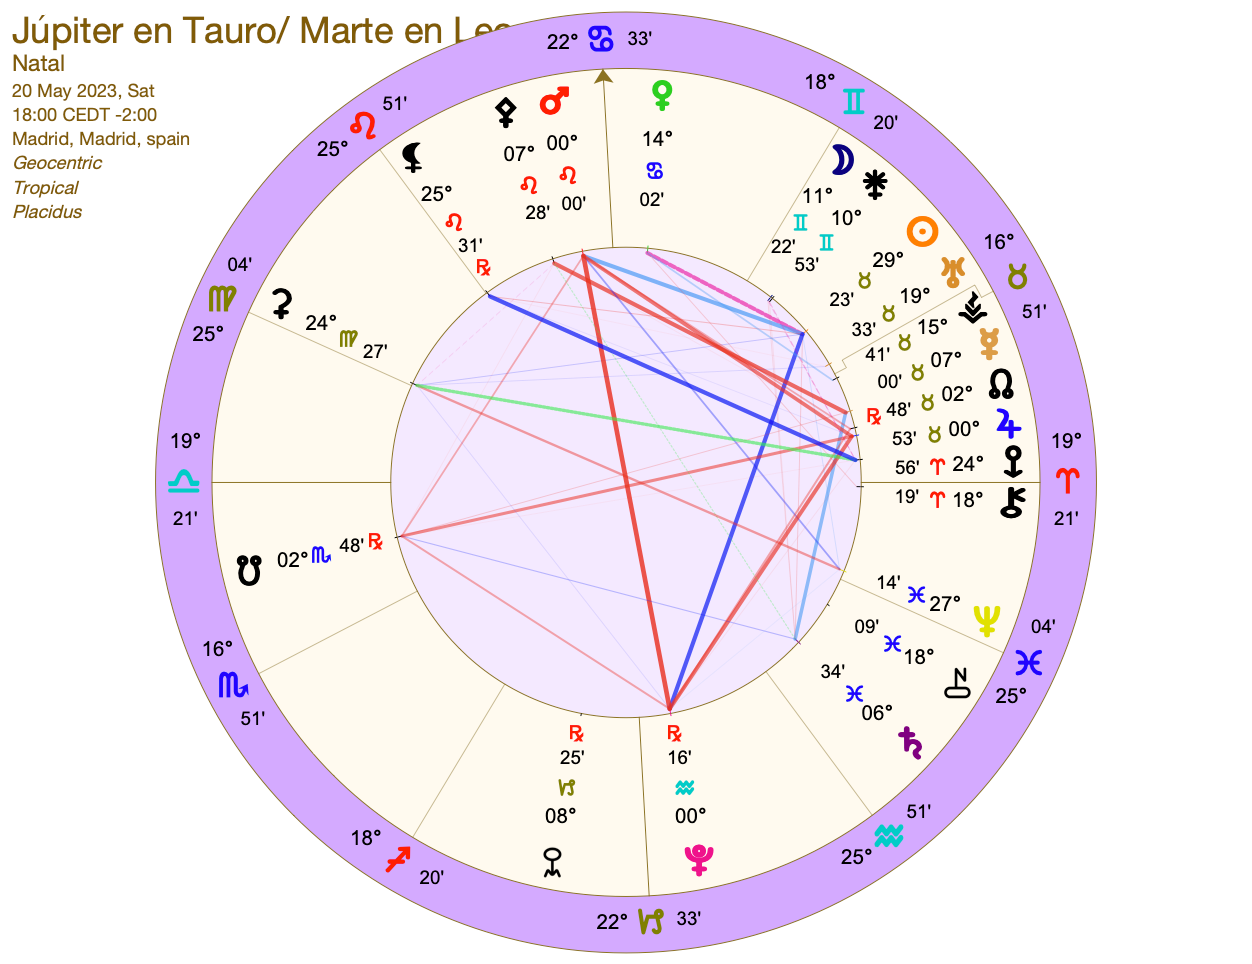 Júpiter en Tauro, InfoMistico.com